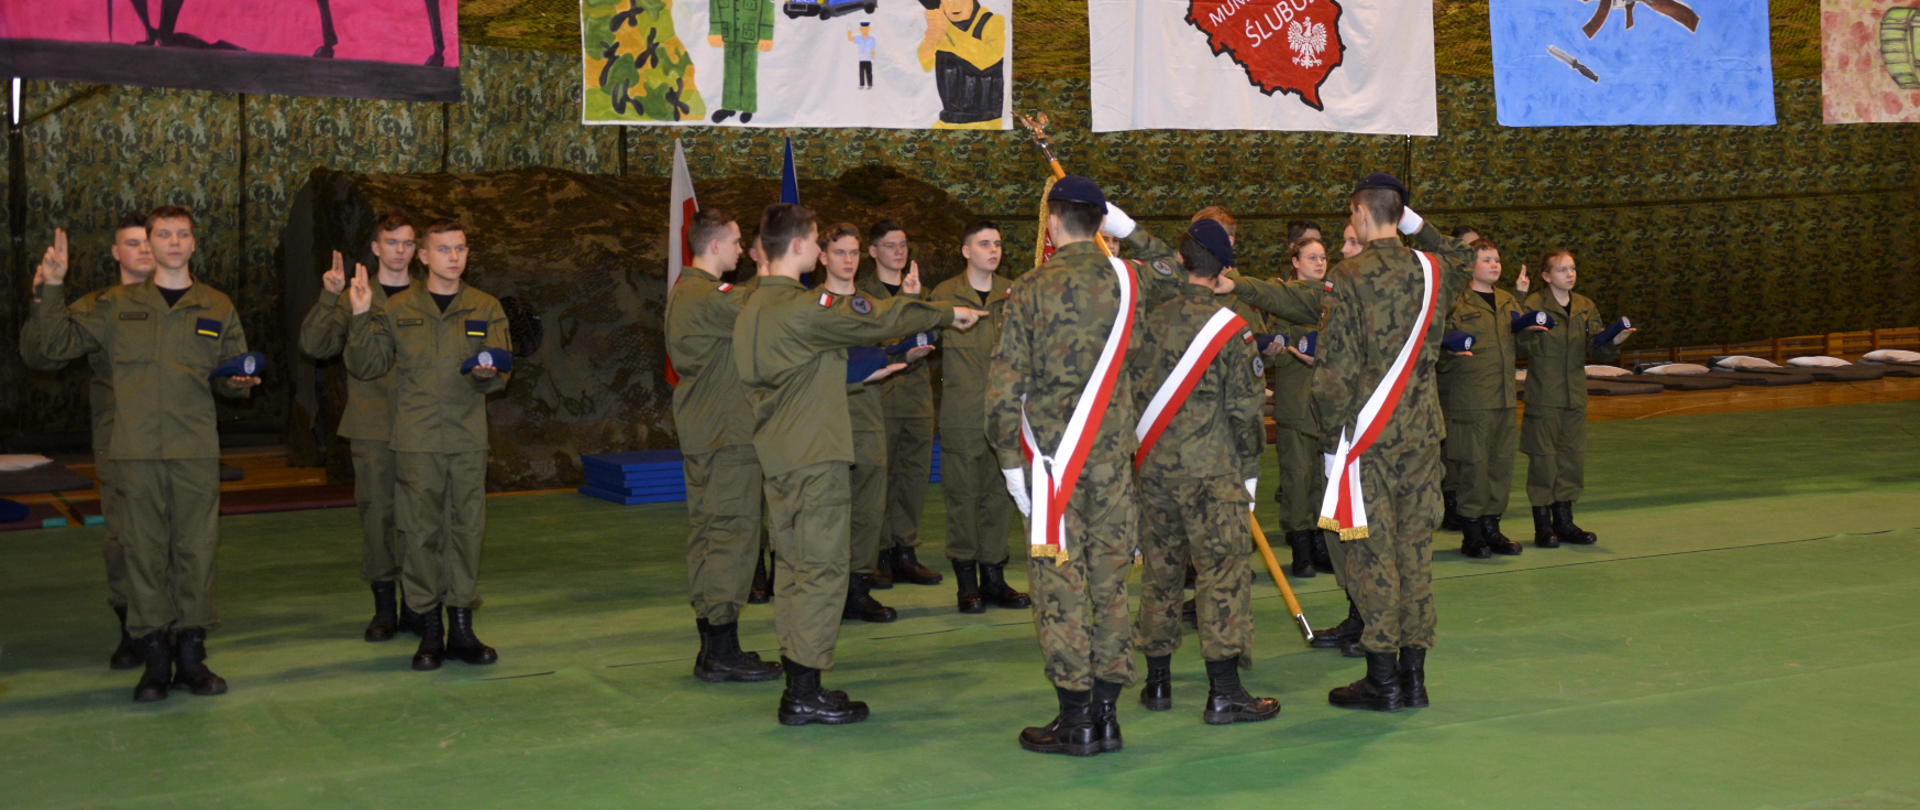 Ślubowanie klasy wojskowej Zespołu Szkół w Dąbrowie Białostockiej